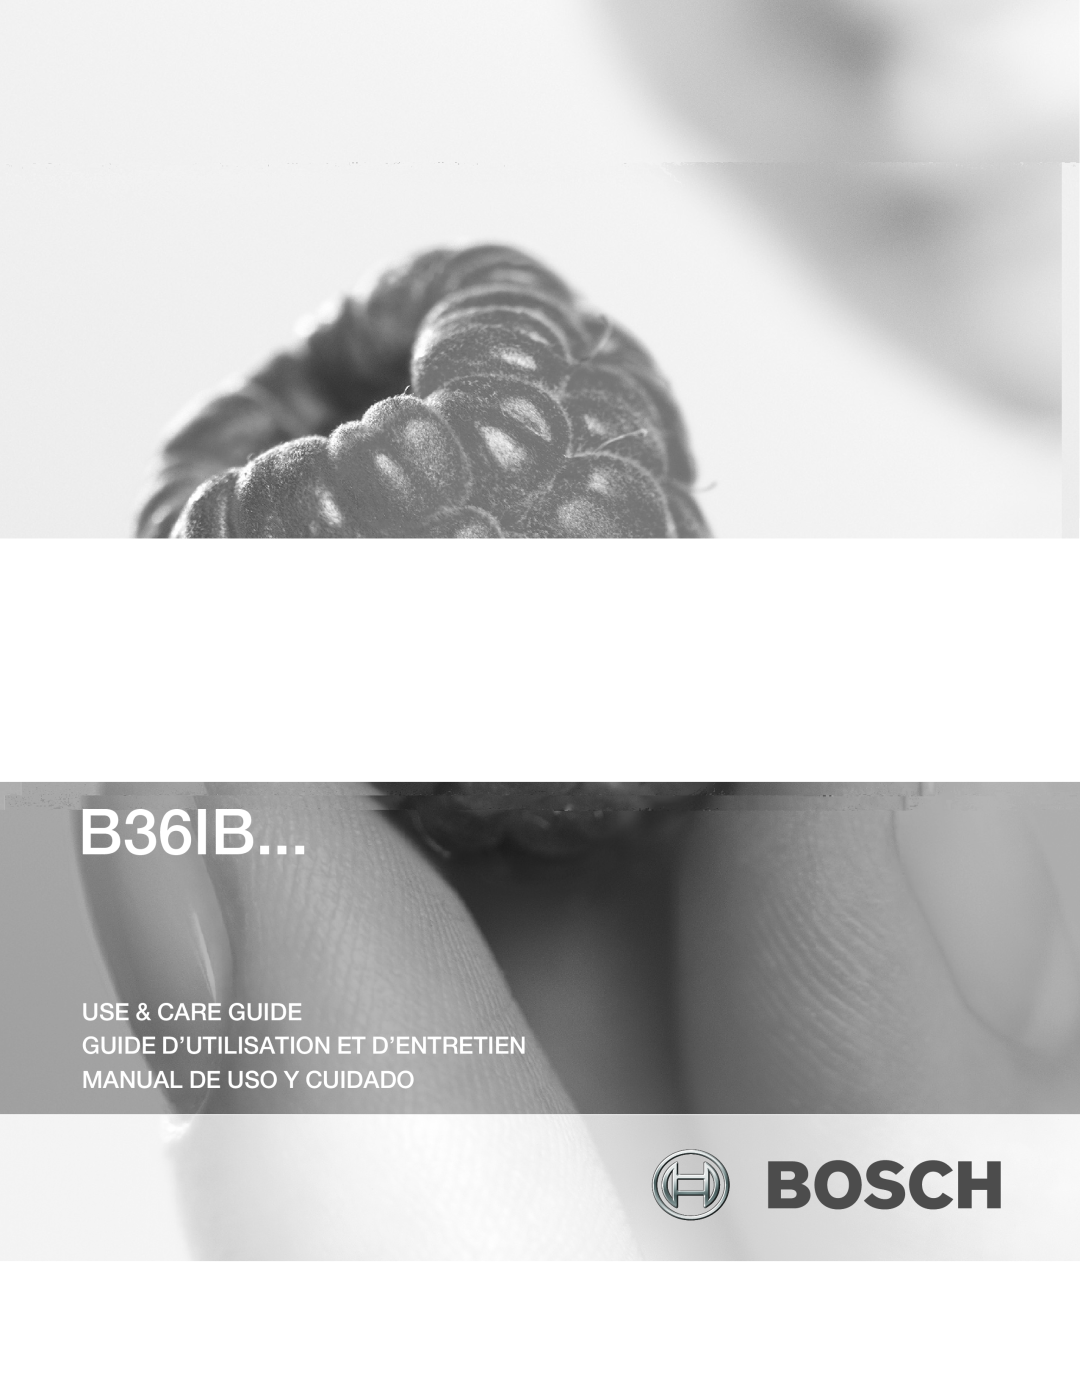 Bosch Appliances B36IB manual C Id Id Diii Di D Cidd 